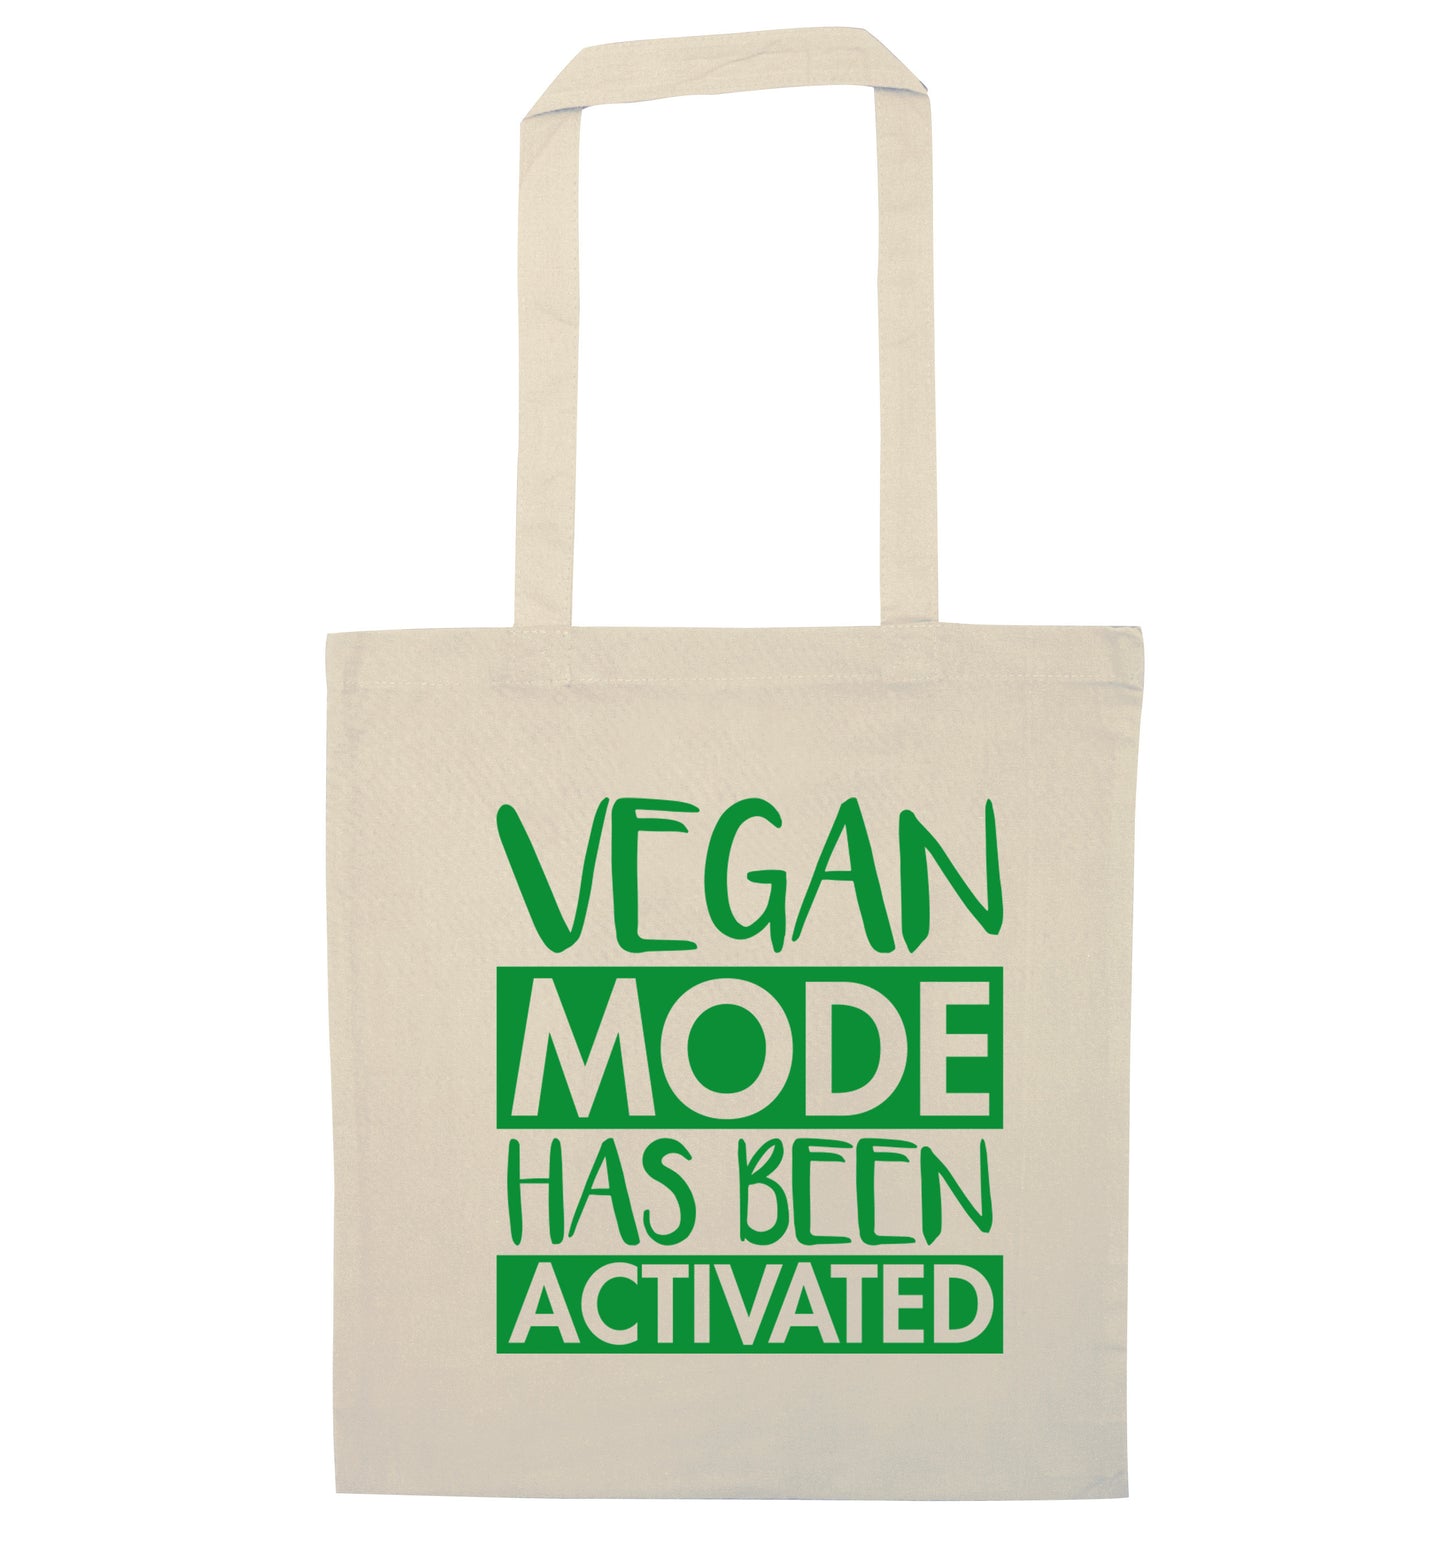 Vegan mode activated natural tote bag